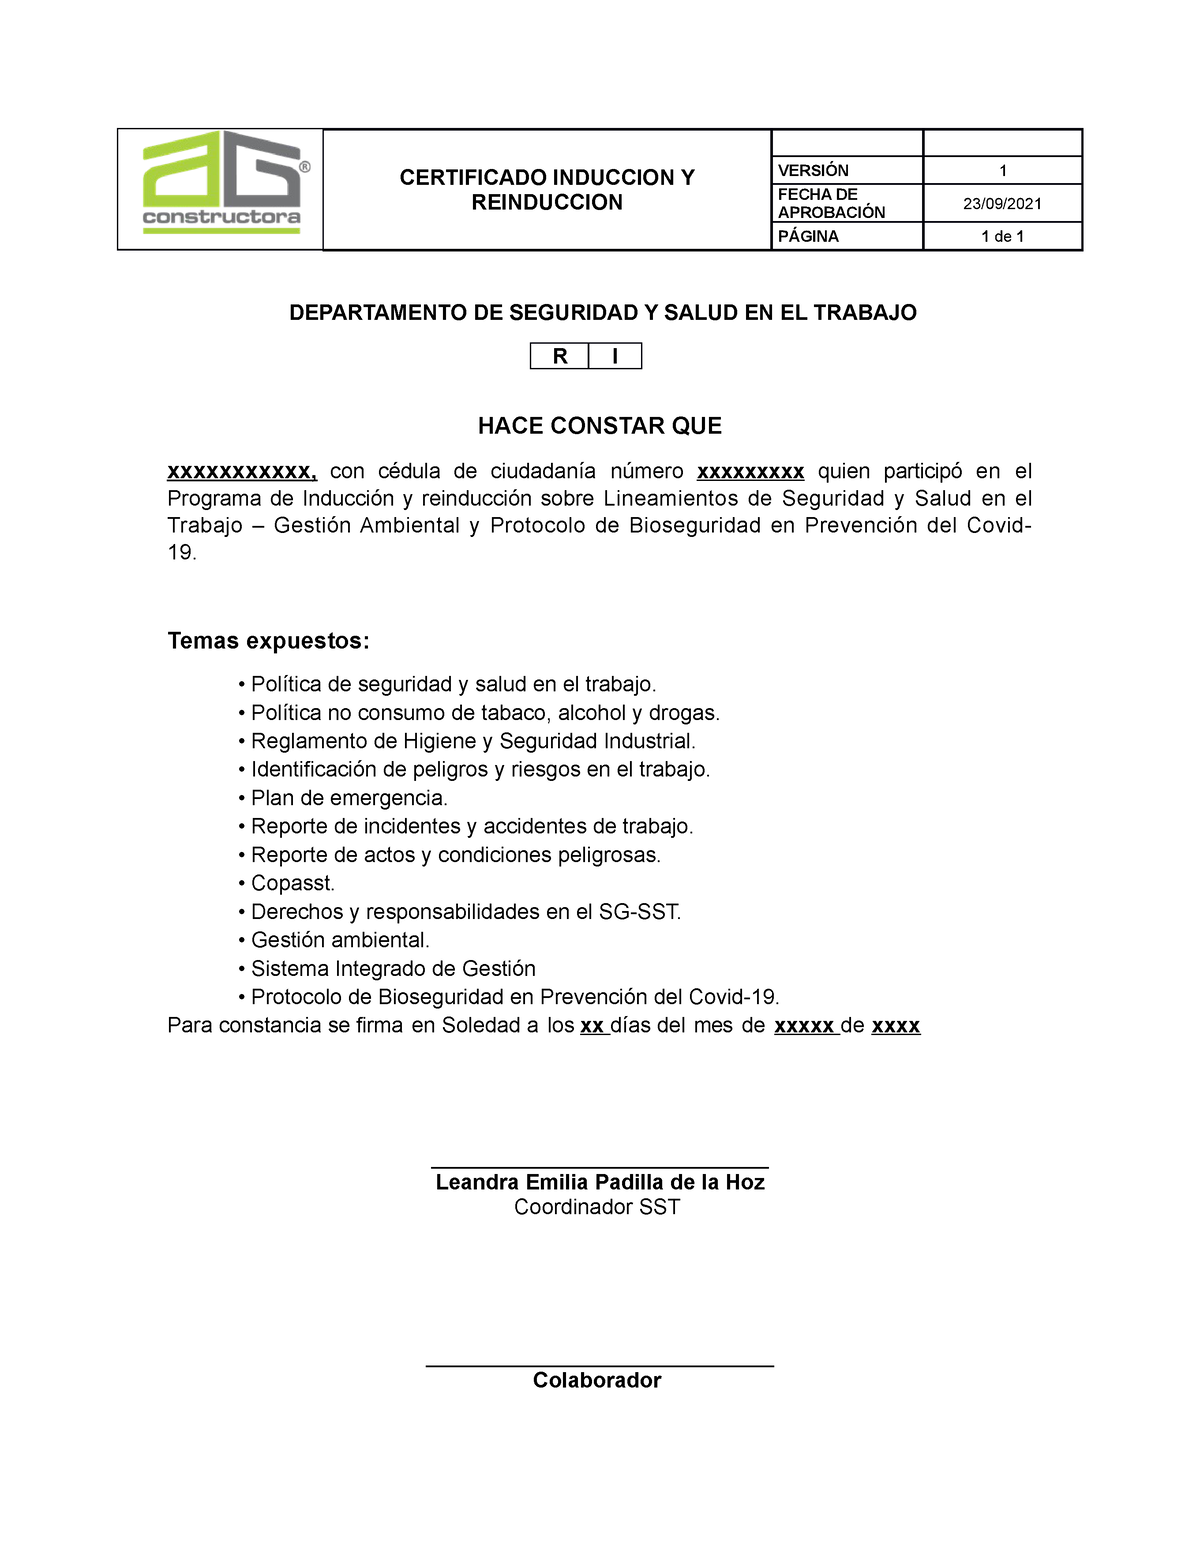 Certificado DE Induccion - CERTIFICADO INDUCCION Y REINDUCCION VERSIÓN 1  FECHA DE APROBACIÓN 23/09/ - Studocu